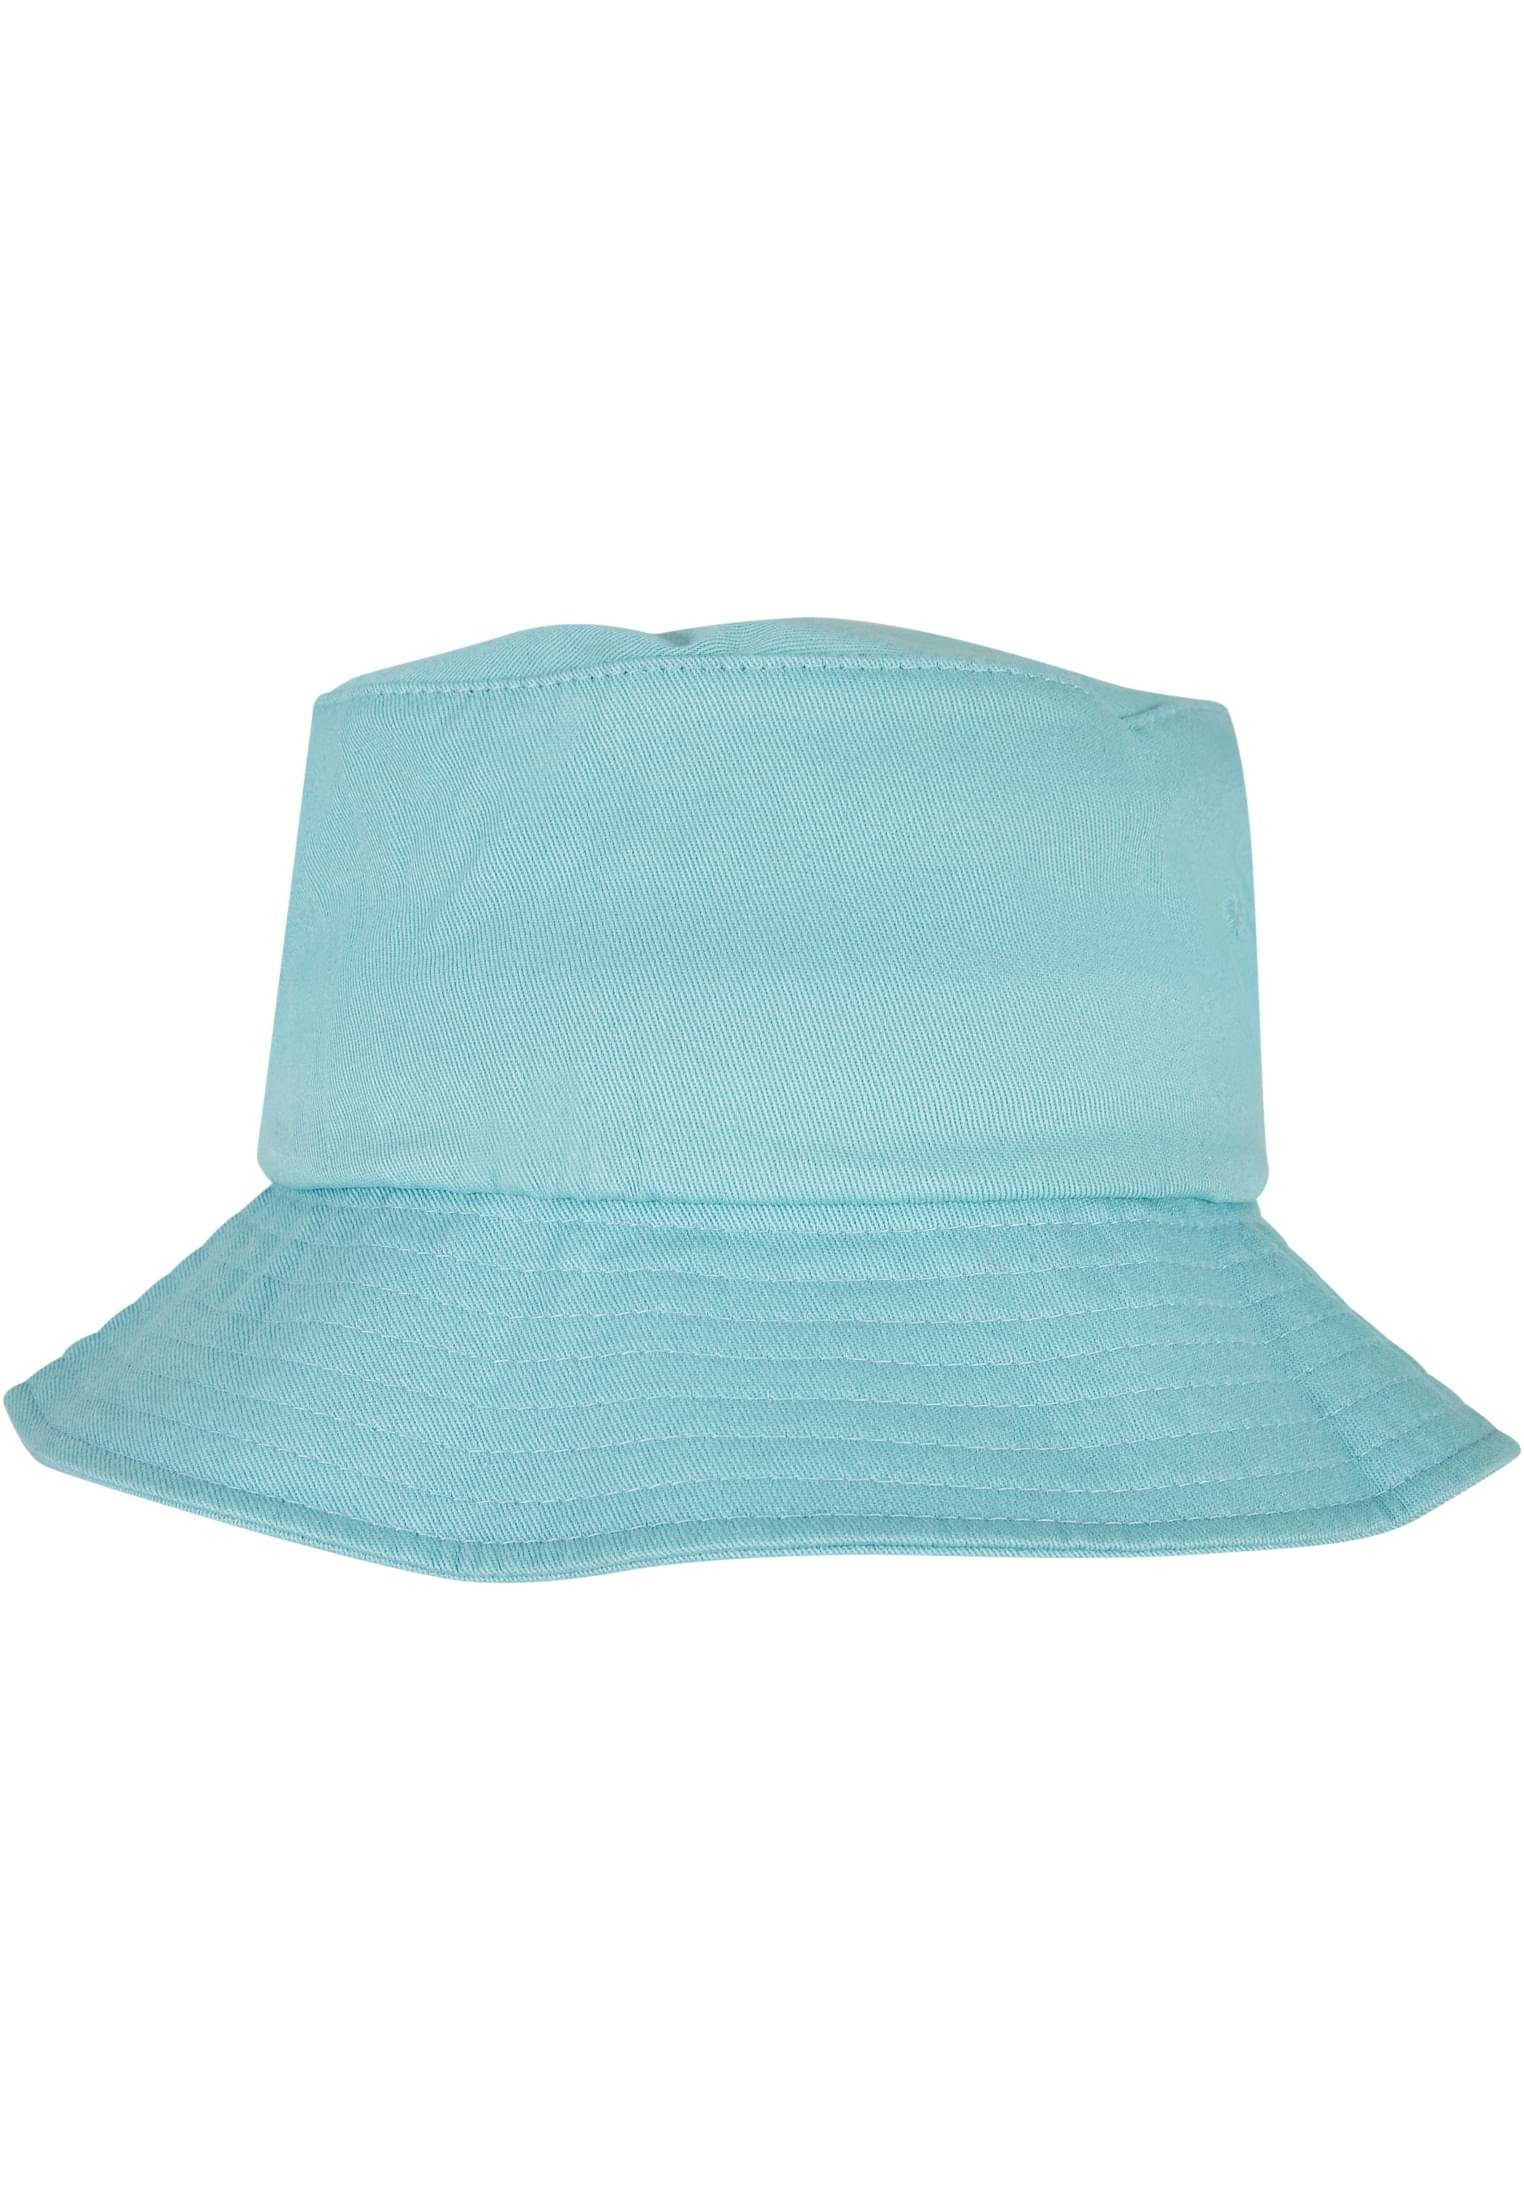 Hat Flex Accessoires Bucket Flexfit Flexfit Cap airblue Cotton Twill